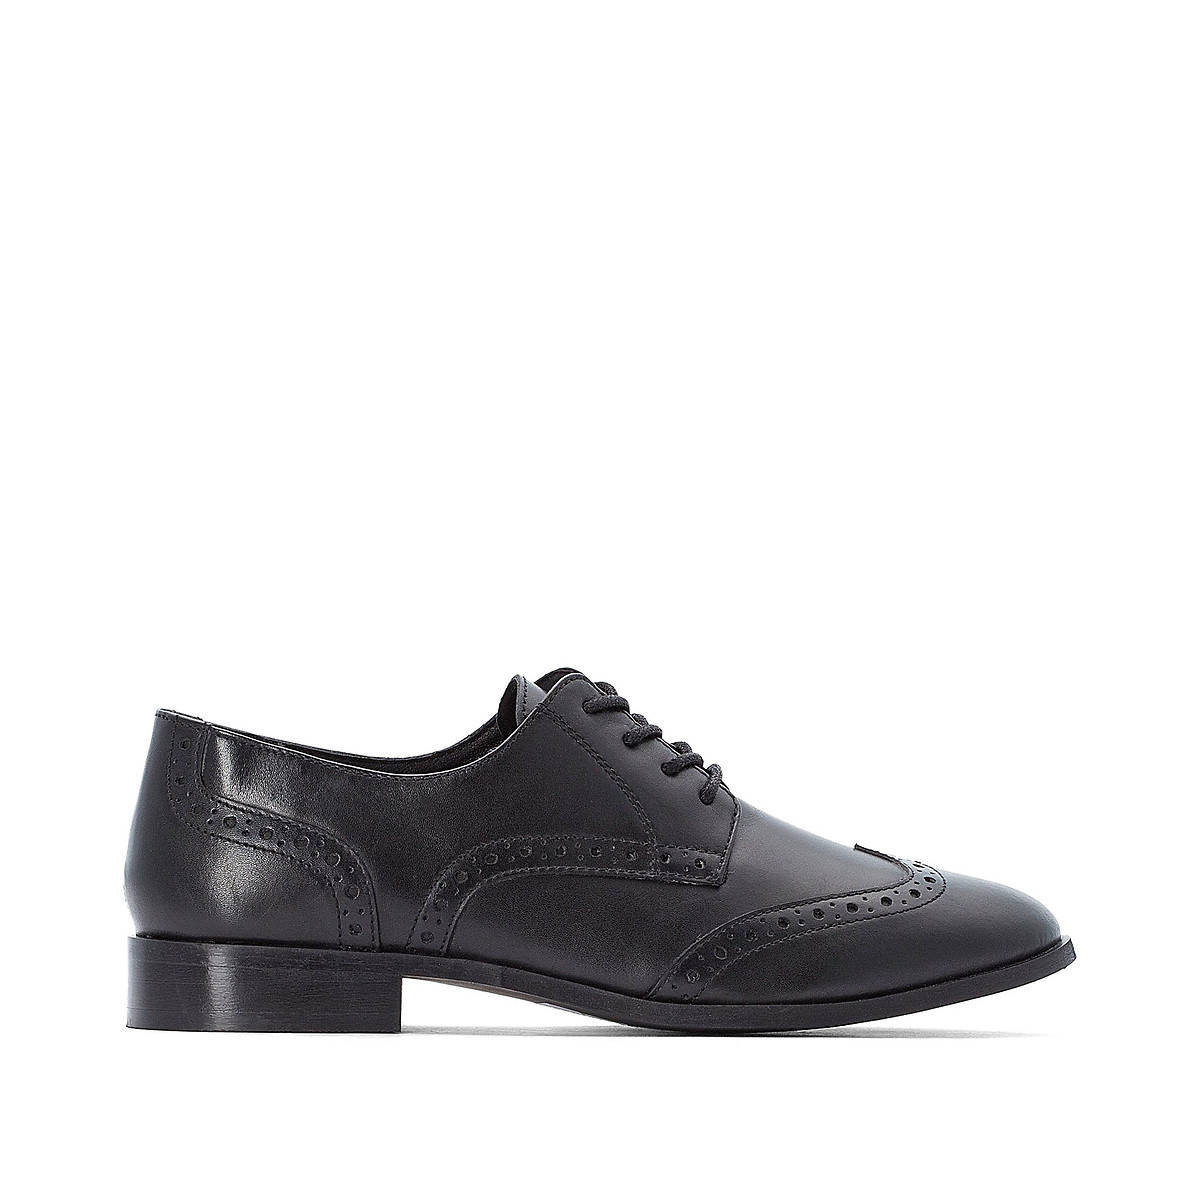 Ботинки-дерби La Redoute Кожаные в стиле оксфордов 40 черный, размер 40